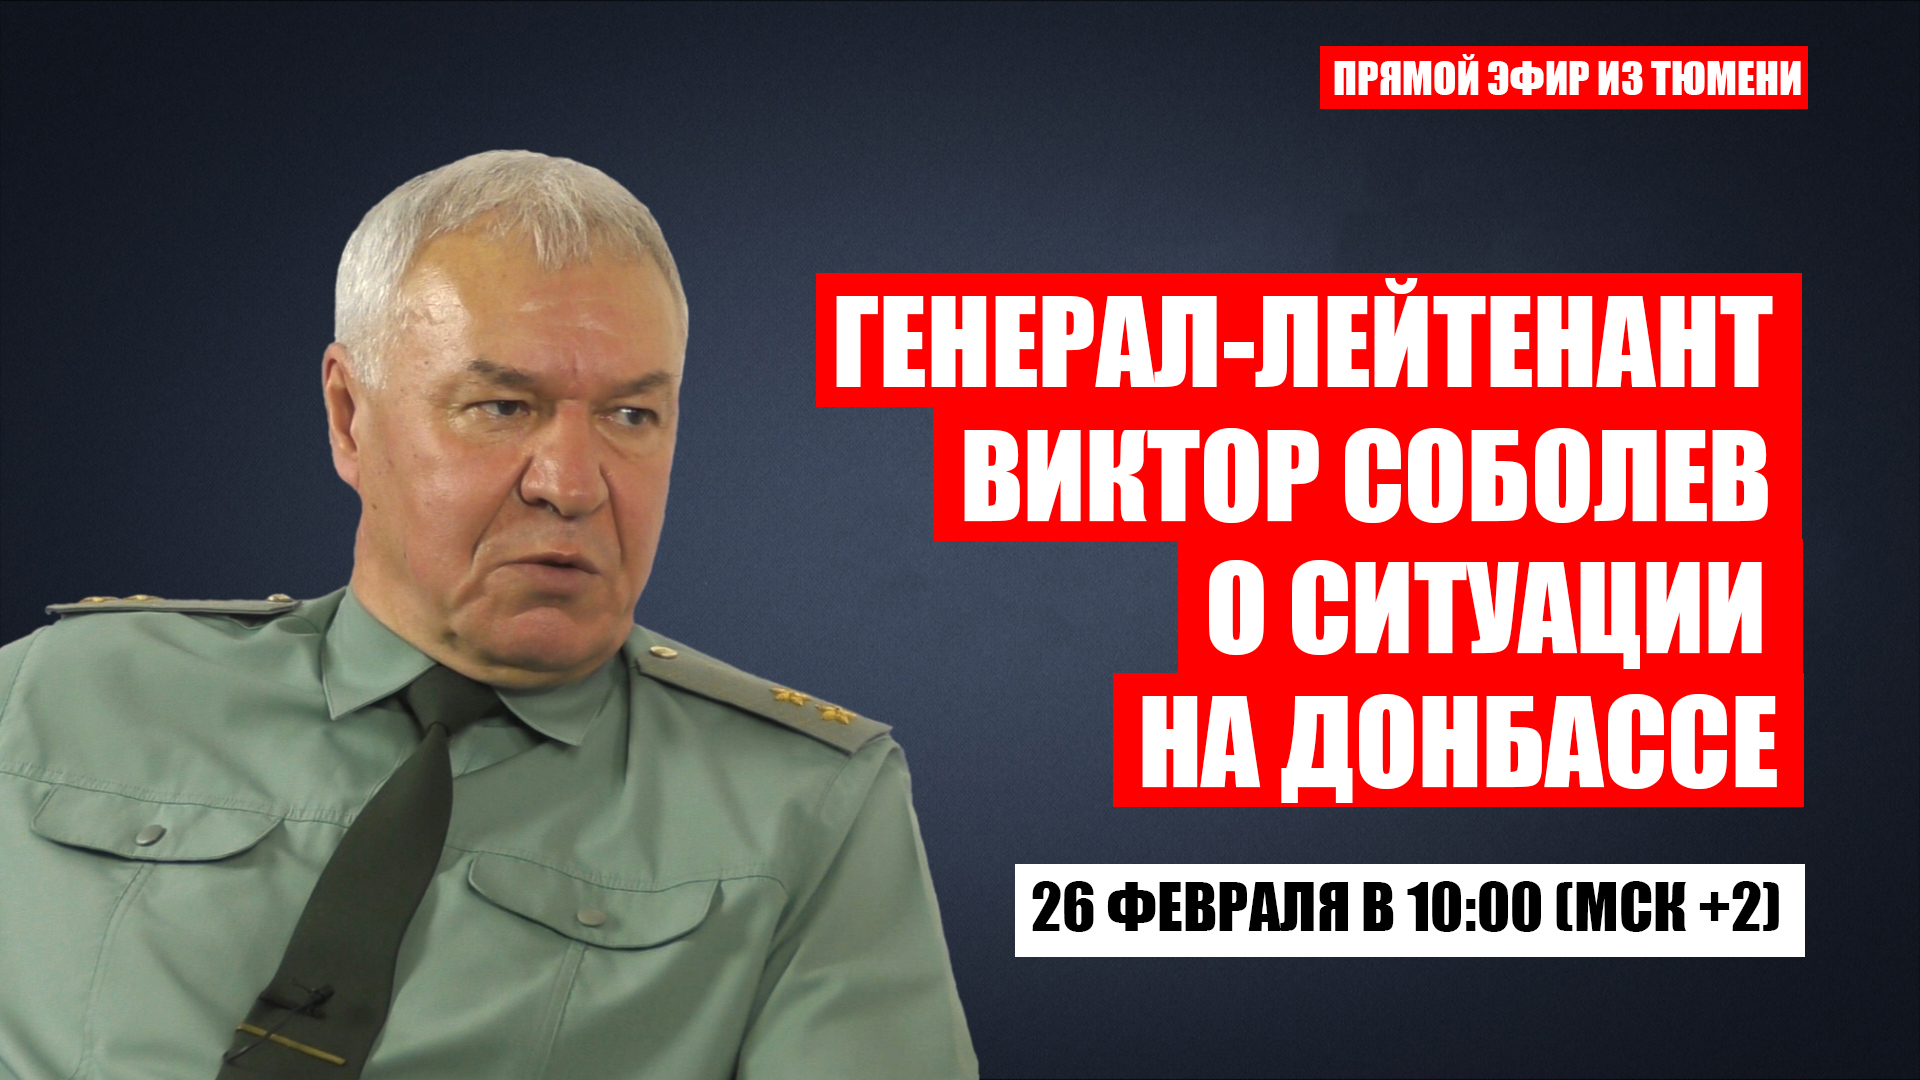 
                        
                        
                        
                        Генерал-лейтенант Виктор Соболев о ситуации на Донбассе (ВИДЕО встречи в Тюмени)                                                                           